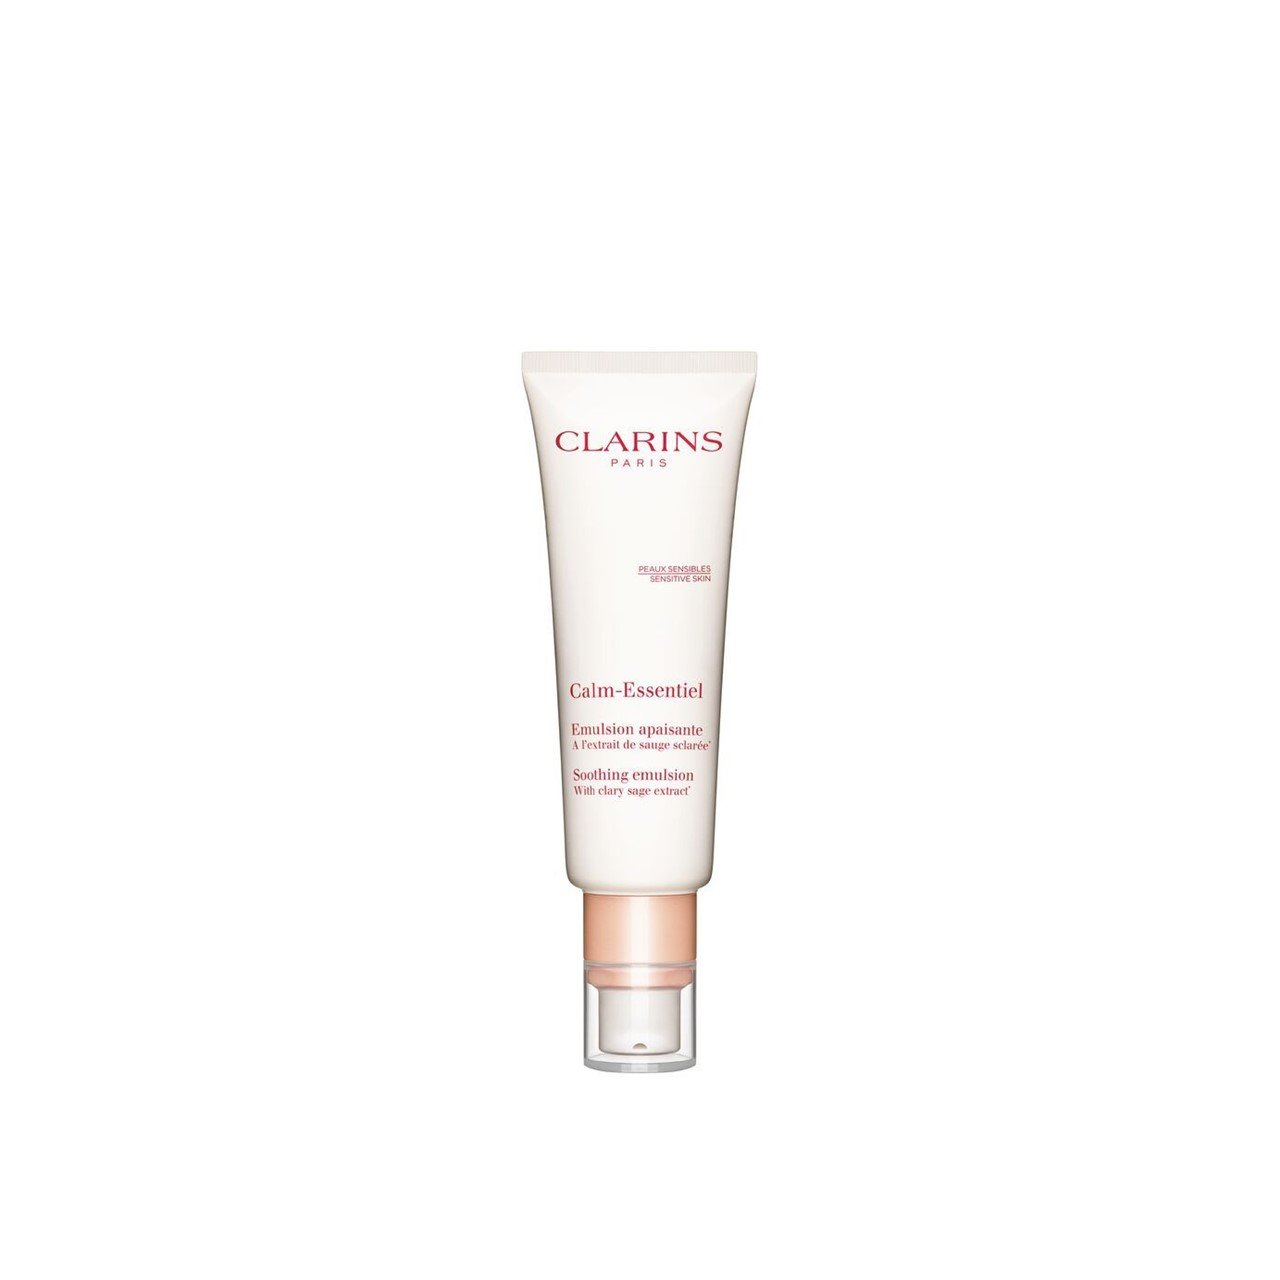 Clarins Calm-Essentiel Soothing Emulsion 50ml (1.69fl oz)